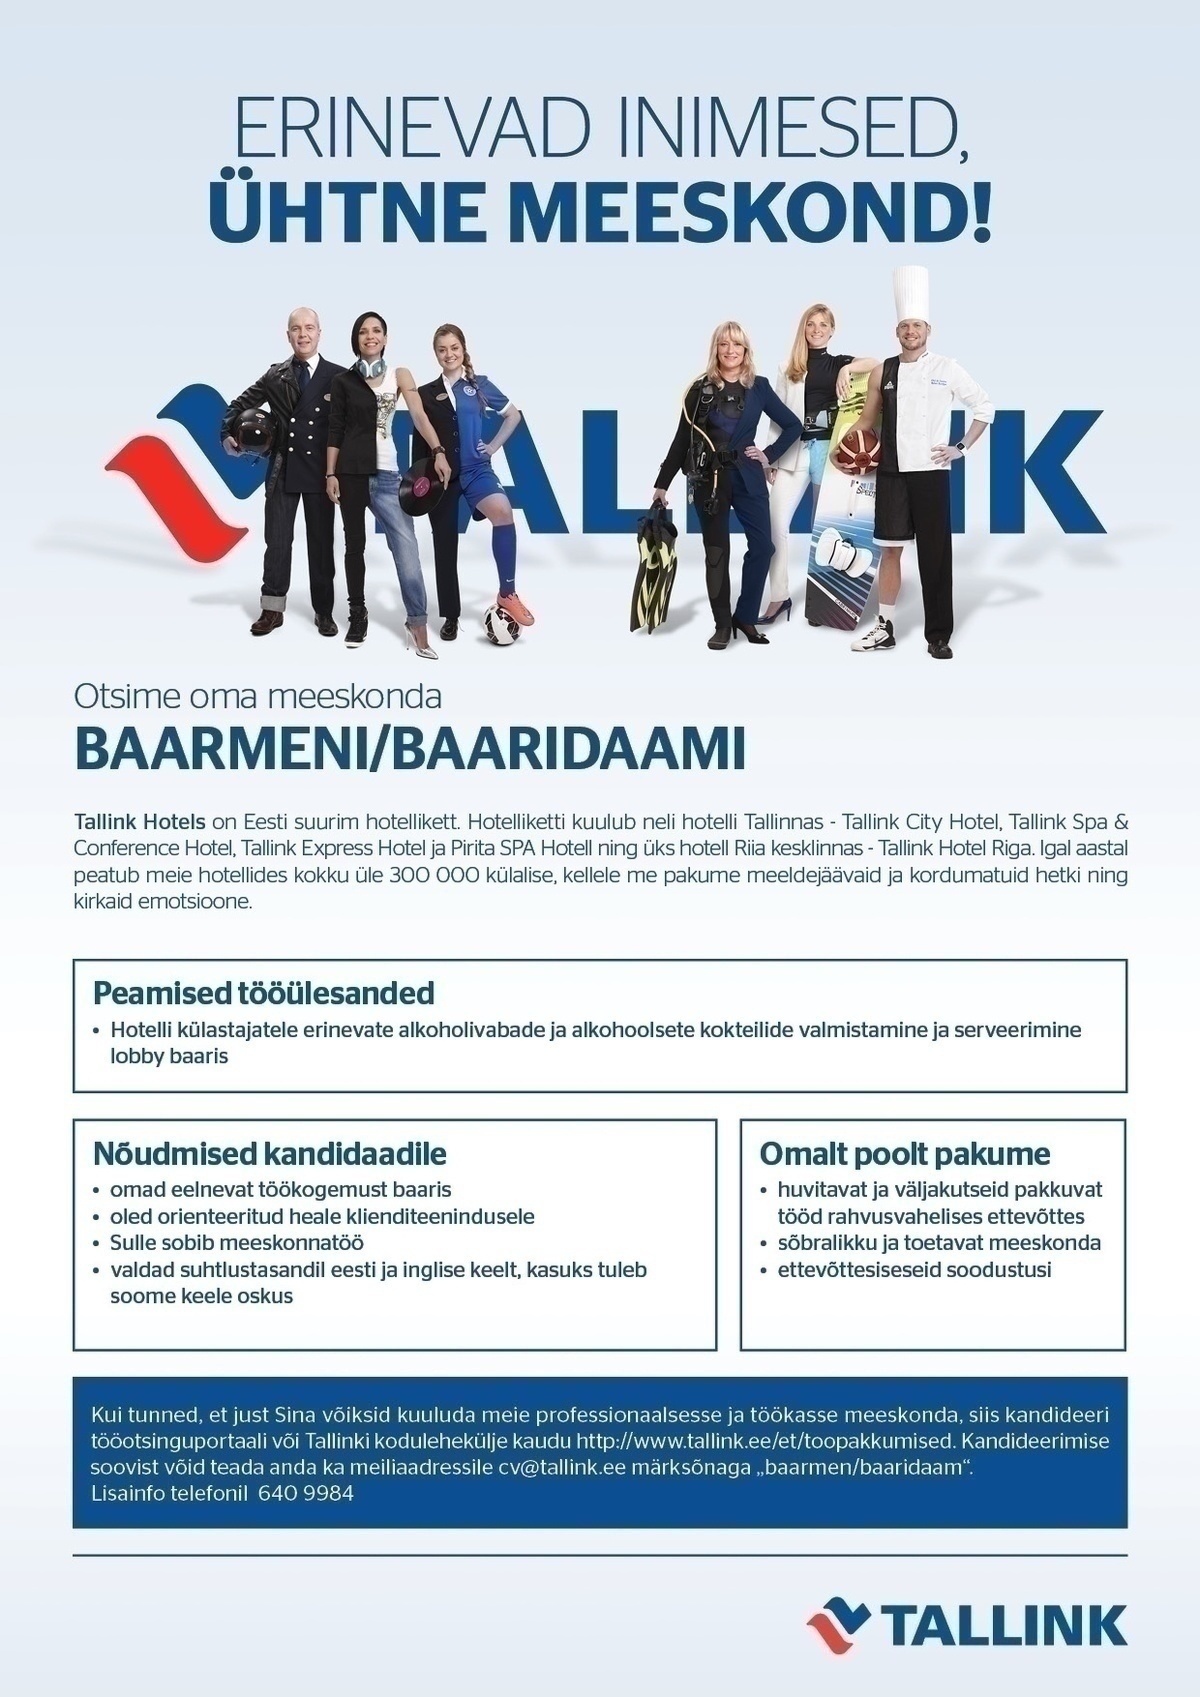 Tallink Grupp AS Kelner-baarmen lobby baari (Tallink Hotels) 